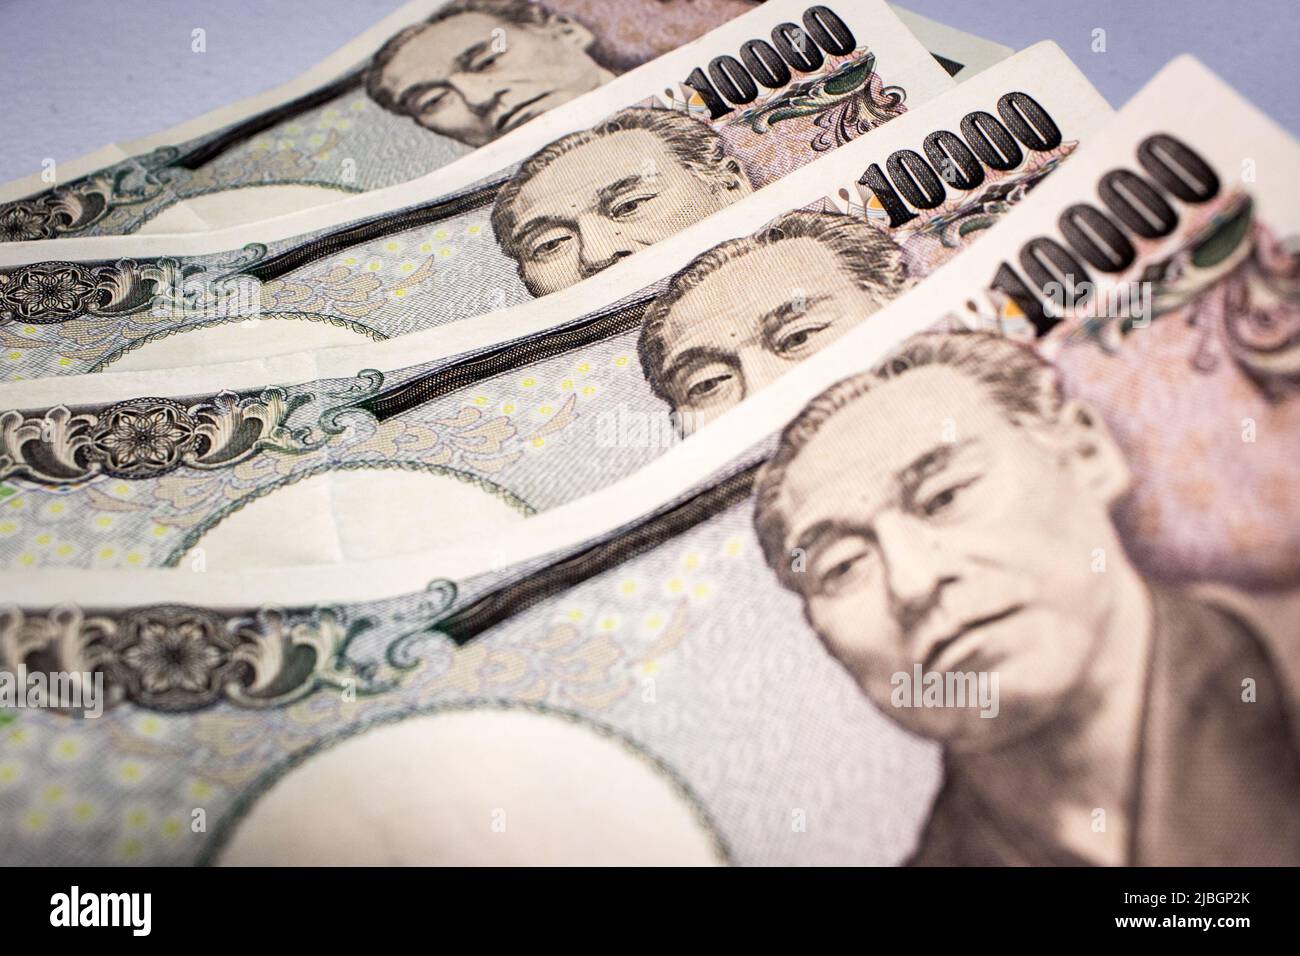 Primo piano delle banconote giapponesi 10000 yen sul tavolo. L'immagine si concentra su Yukichi Fukuzawa e sui suoi occhi sulle note. Foto Stock